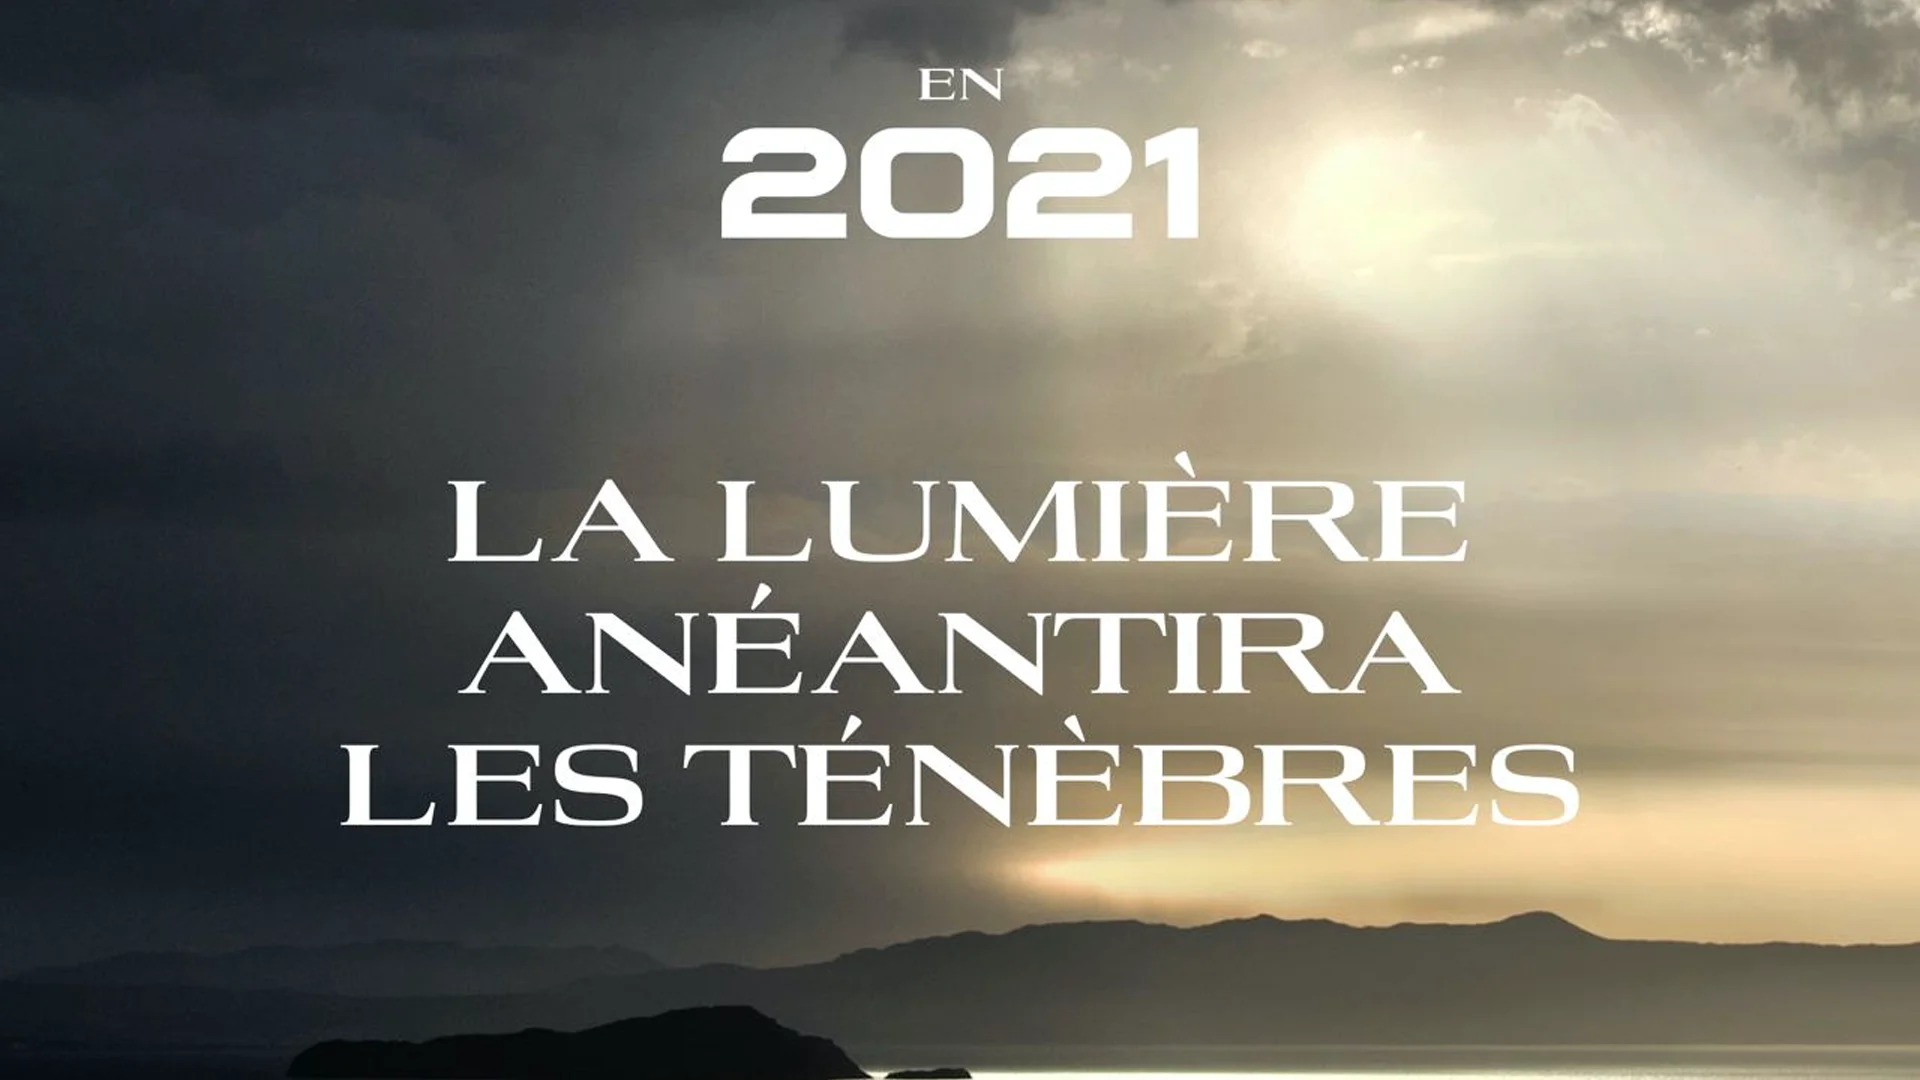 EN 2021 LA LUMIÈRE ANÉANTIRA LES TÉNÈBRES